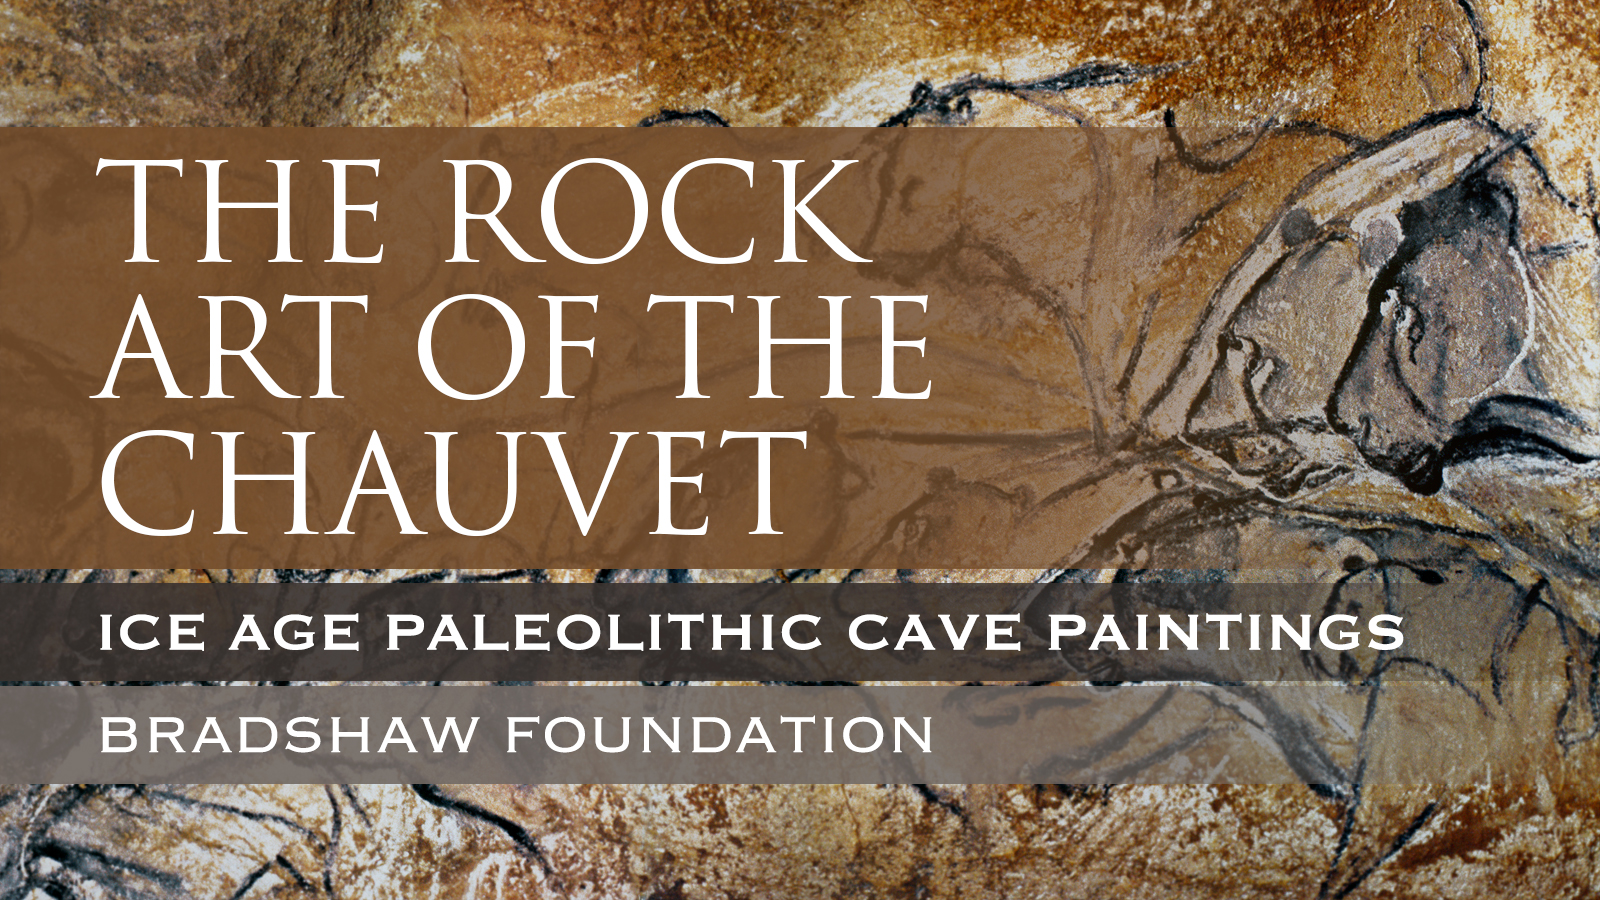 Chauvet Cave Chauvet-Pont-d'Arc Cave Grotte Chauvet-Pont d'Arc